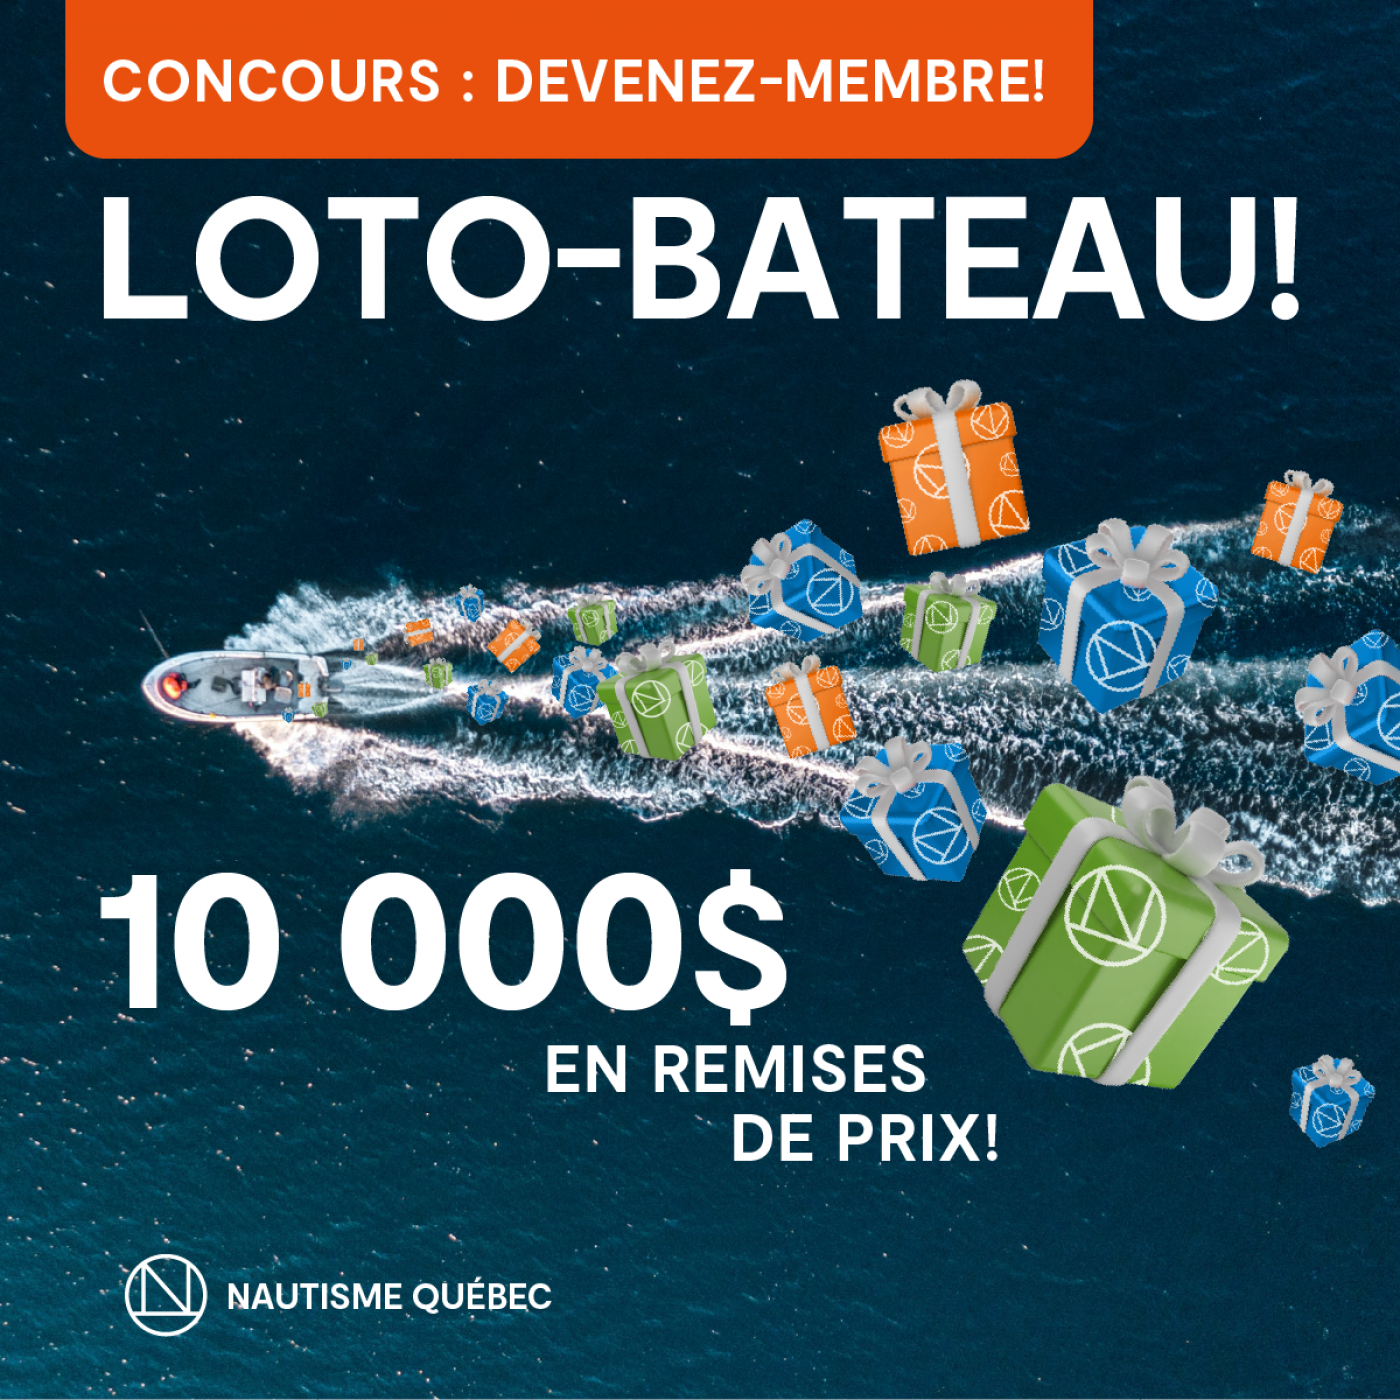 LOTO BATEAU : Devenez membre de Nautisme Québec et courez la chance de gagner un MAGNIFIQUE PRIX!